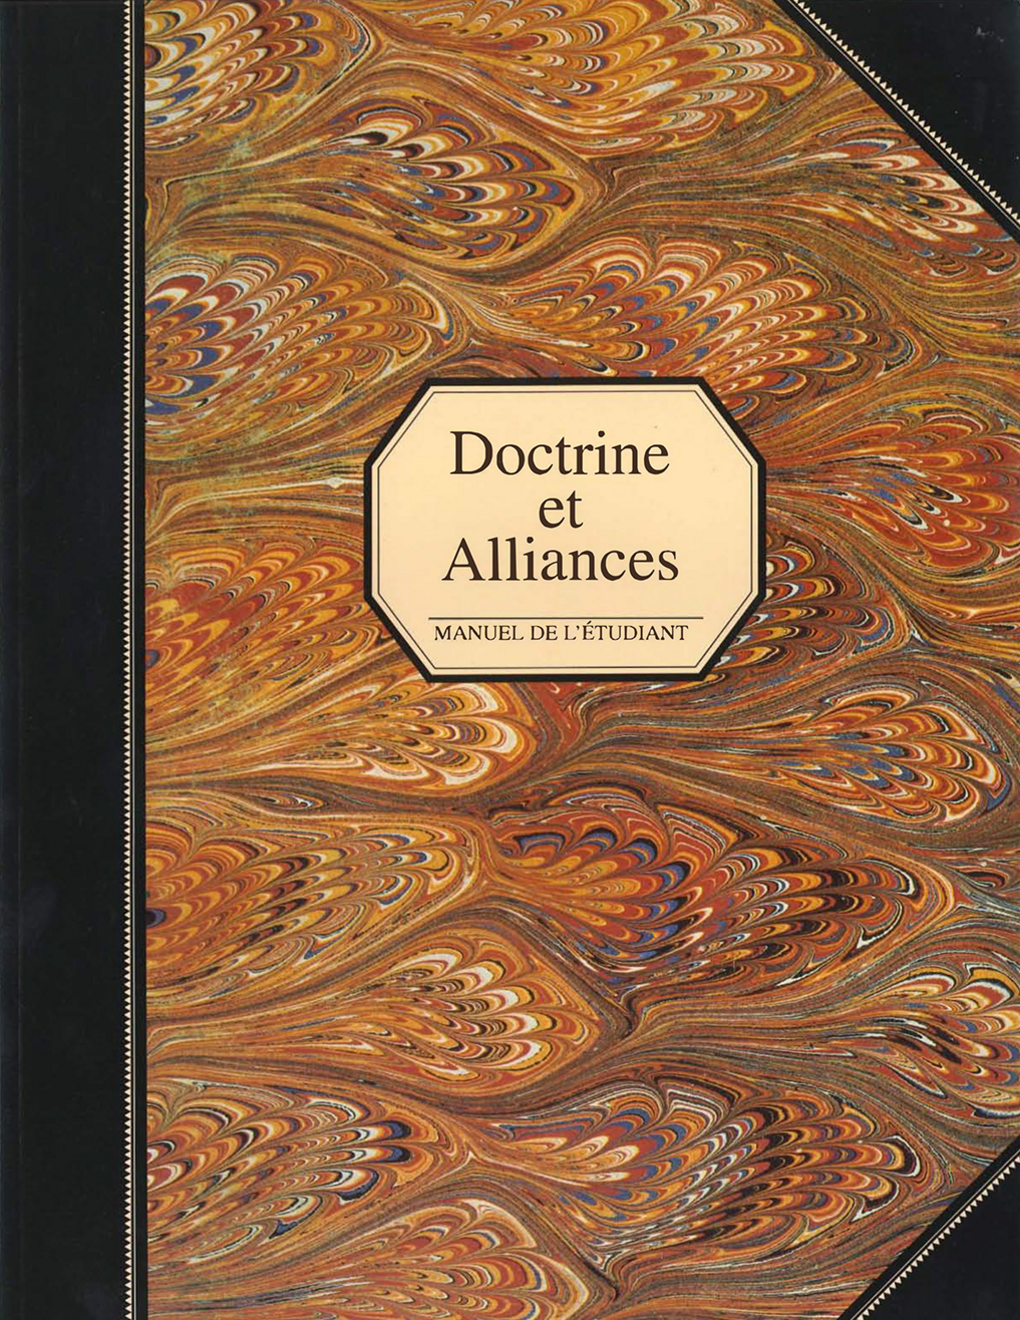 Doctrine et Alliances, manuel de l’étudiant (Religion 324-325)